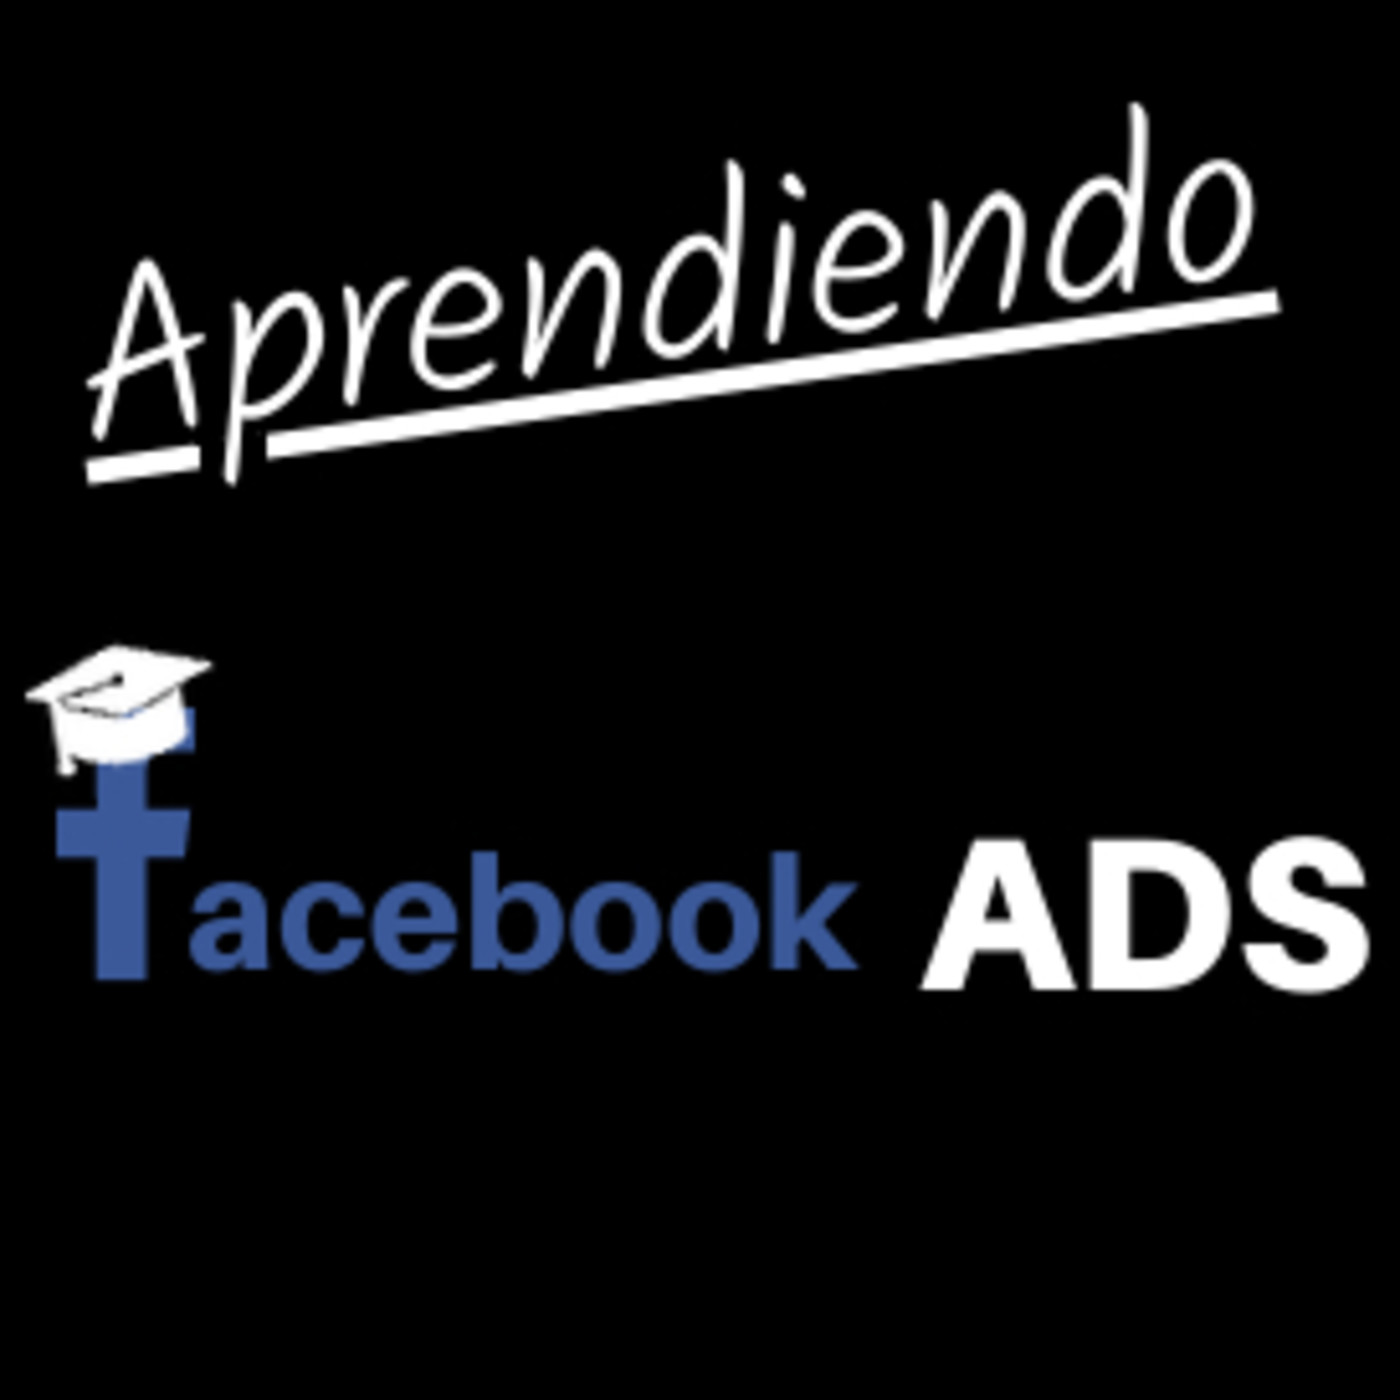 Ep 7 - ¿Cómo puedo aprender Facebook Ads solo?